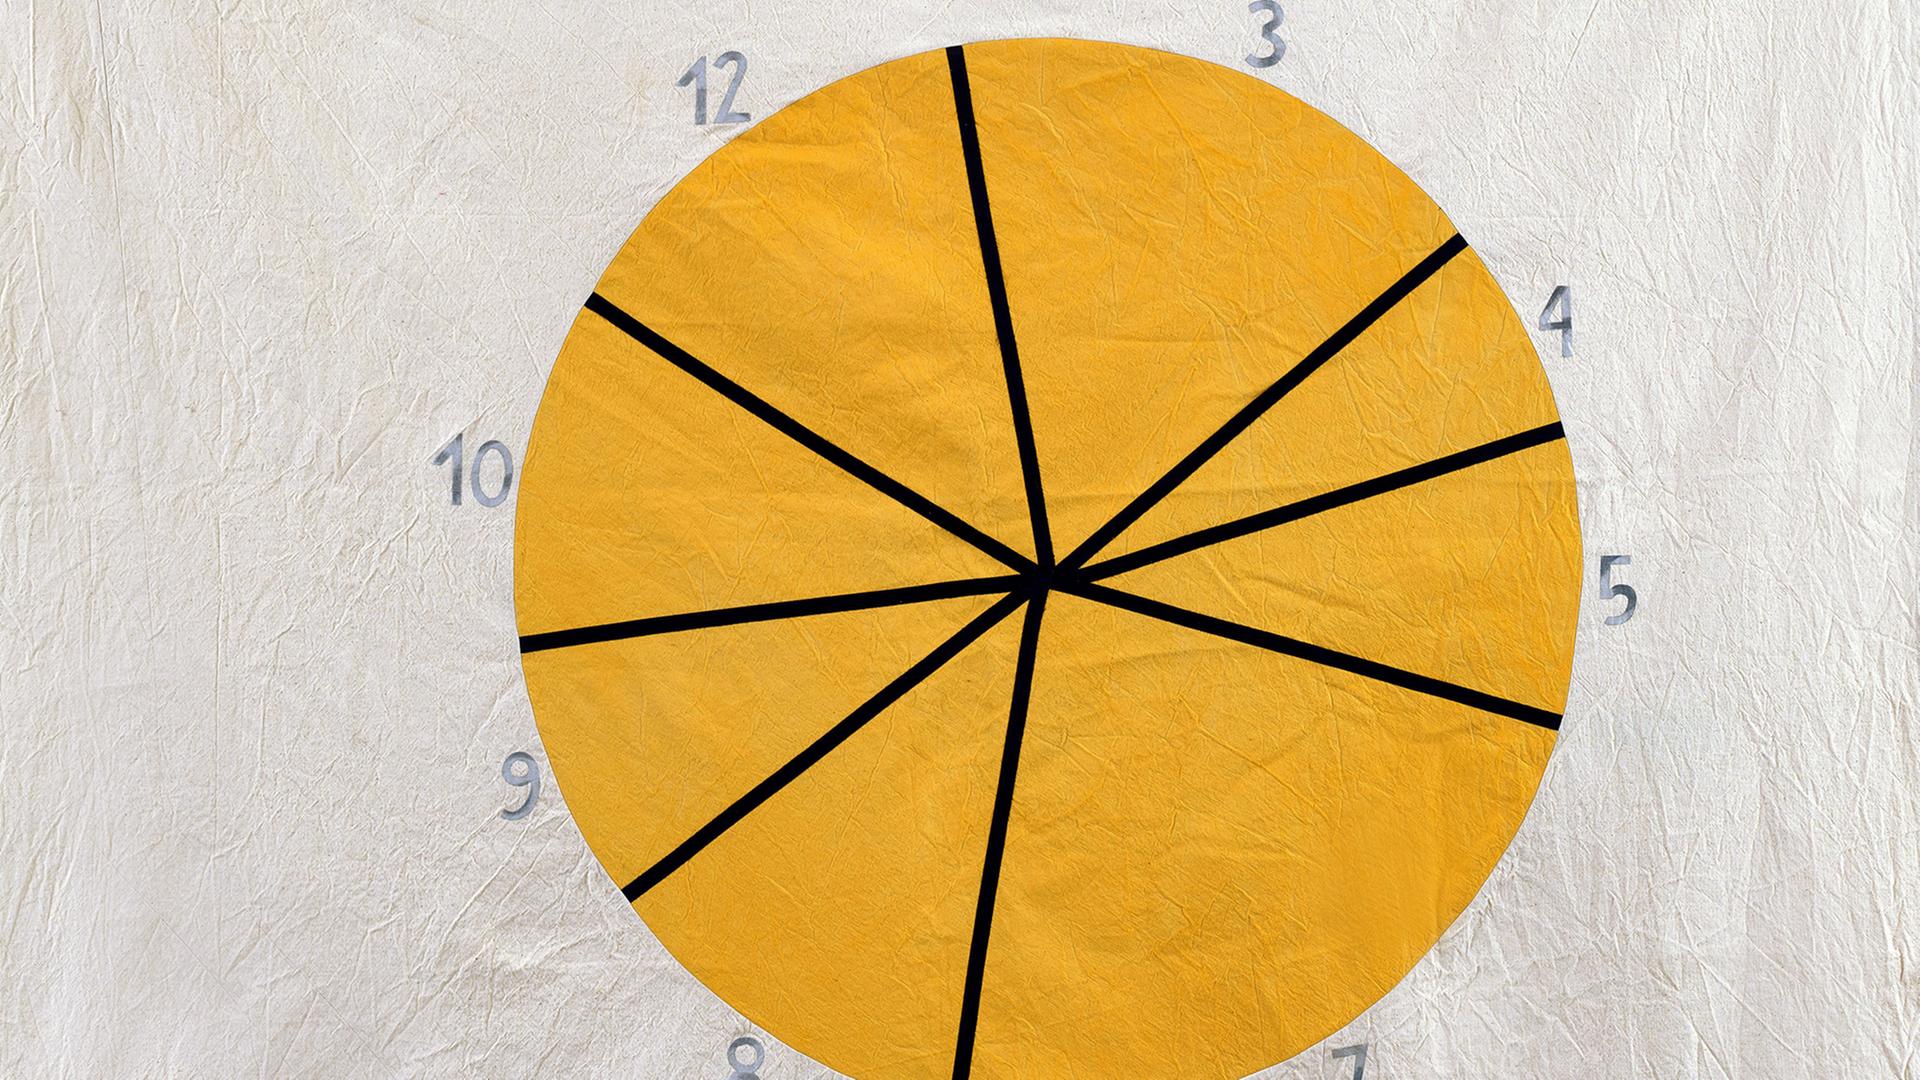 18 Menschen dokumentieren mit Aufnahmegerät  ihren Alltag. Zu sehen: Eine gelbe,gemalte Uhr auf grauem Hintergrund. 